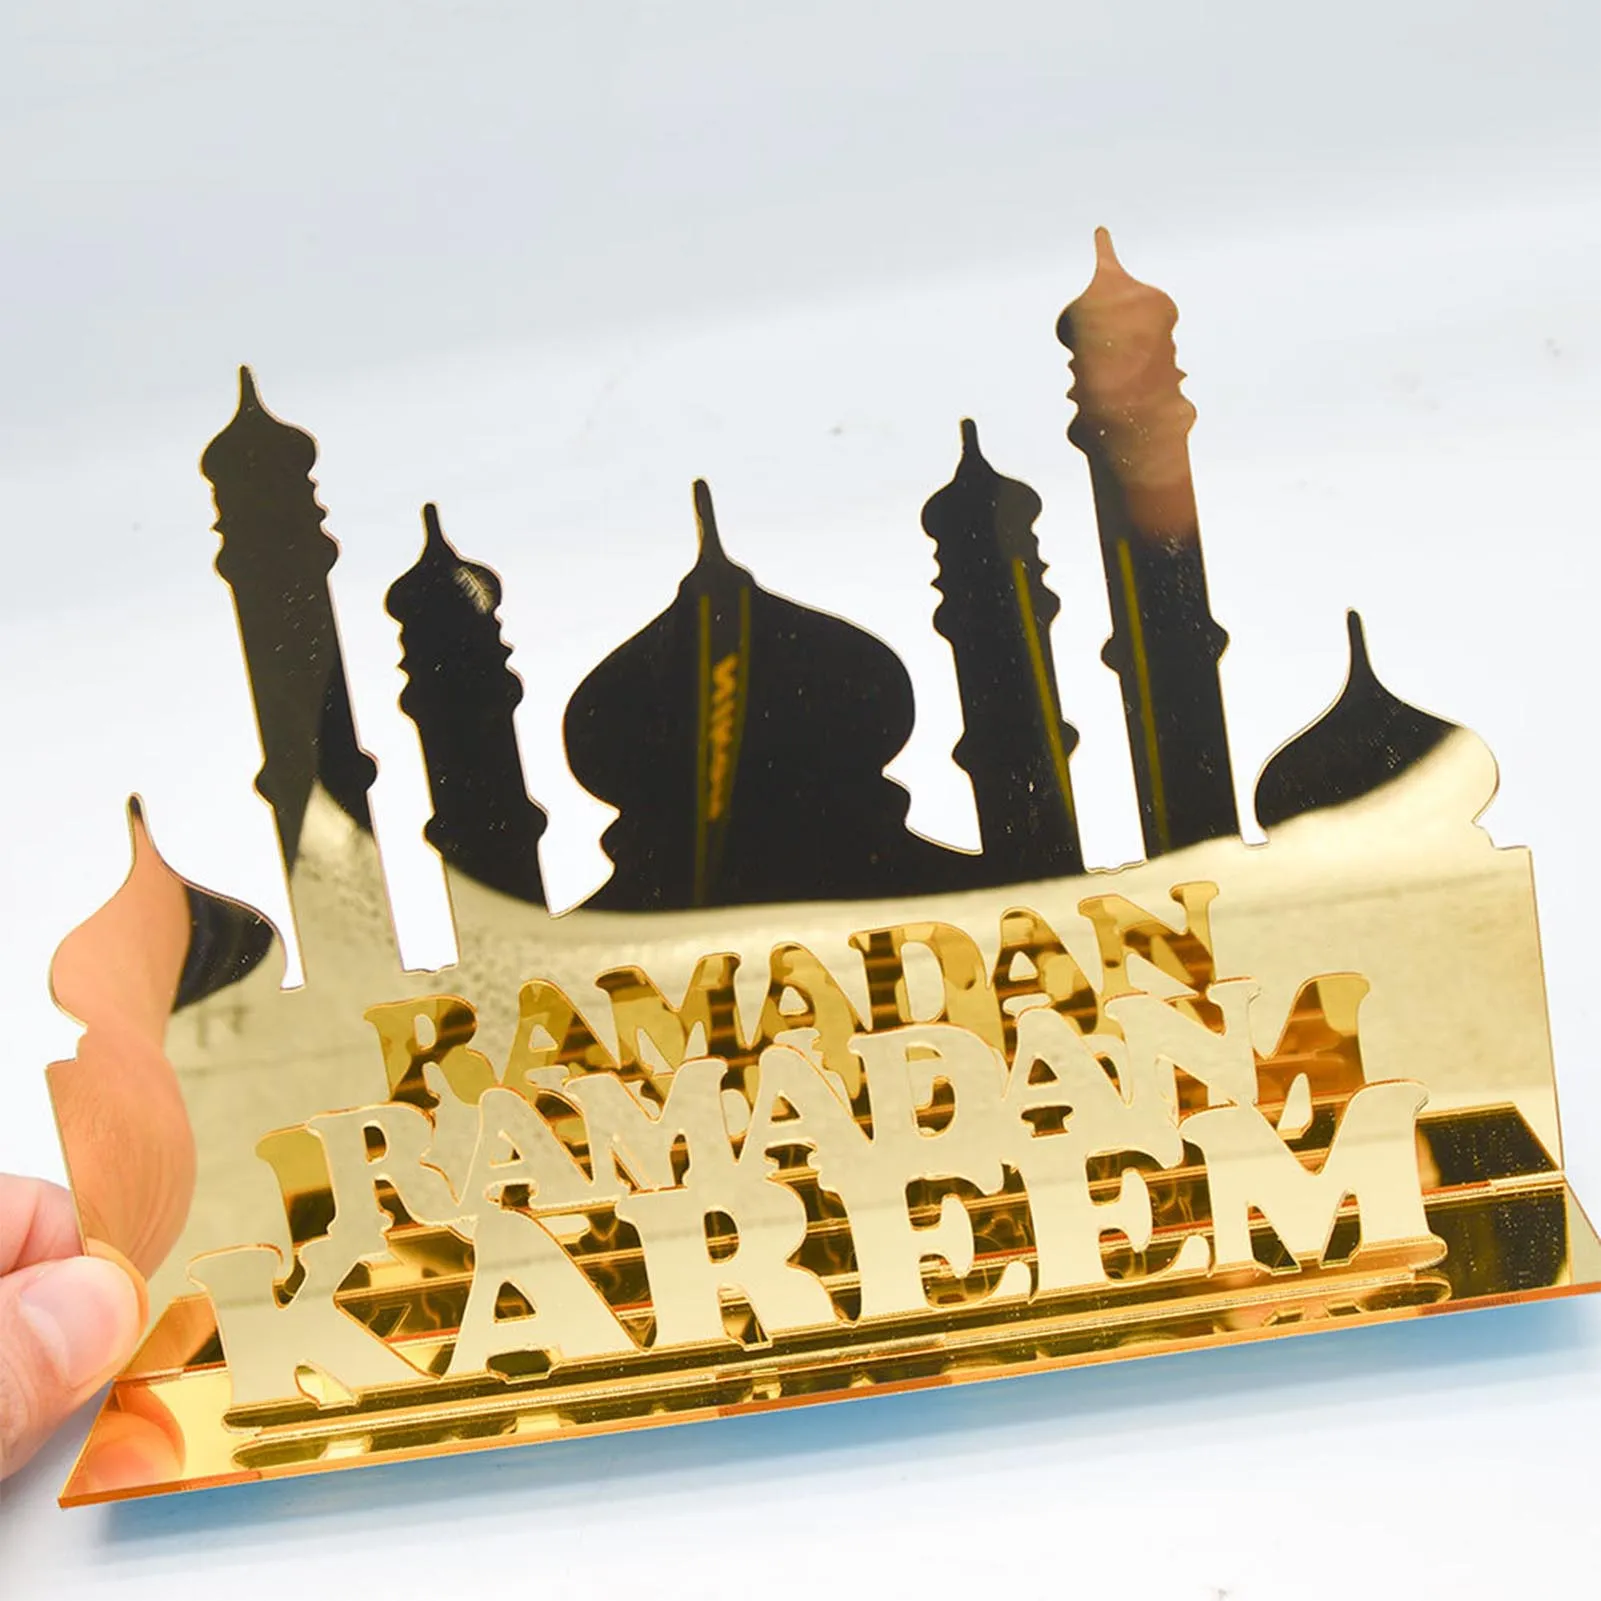 

ИД Мубарак украшения для стола Рамадан деревянный Настольный Декор акриловый Золотой дворец настольные украшения мусульманский фестиваль исламский D